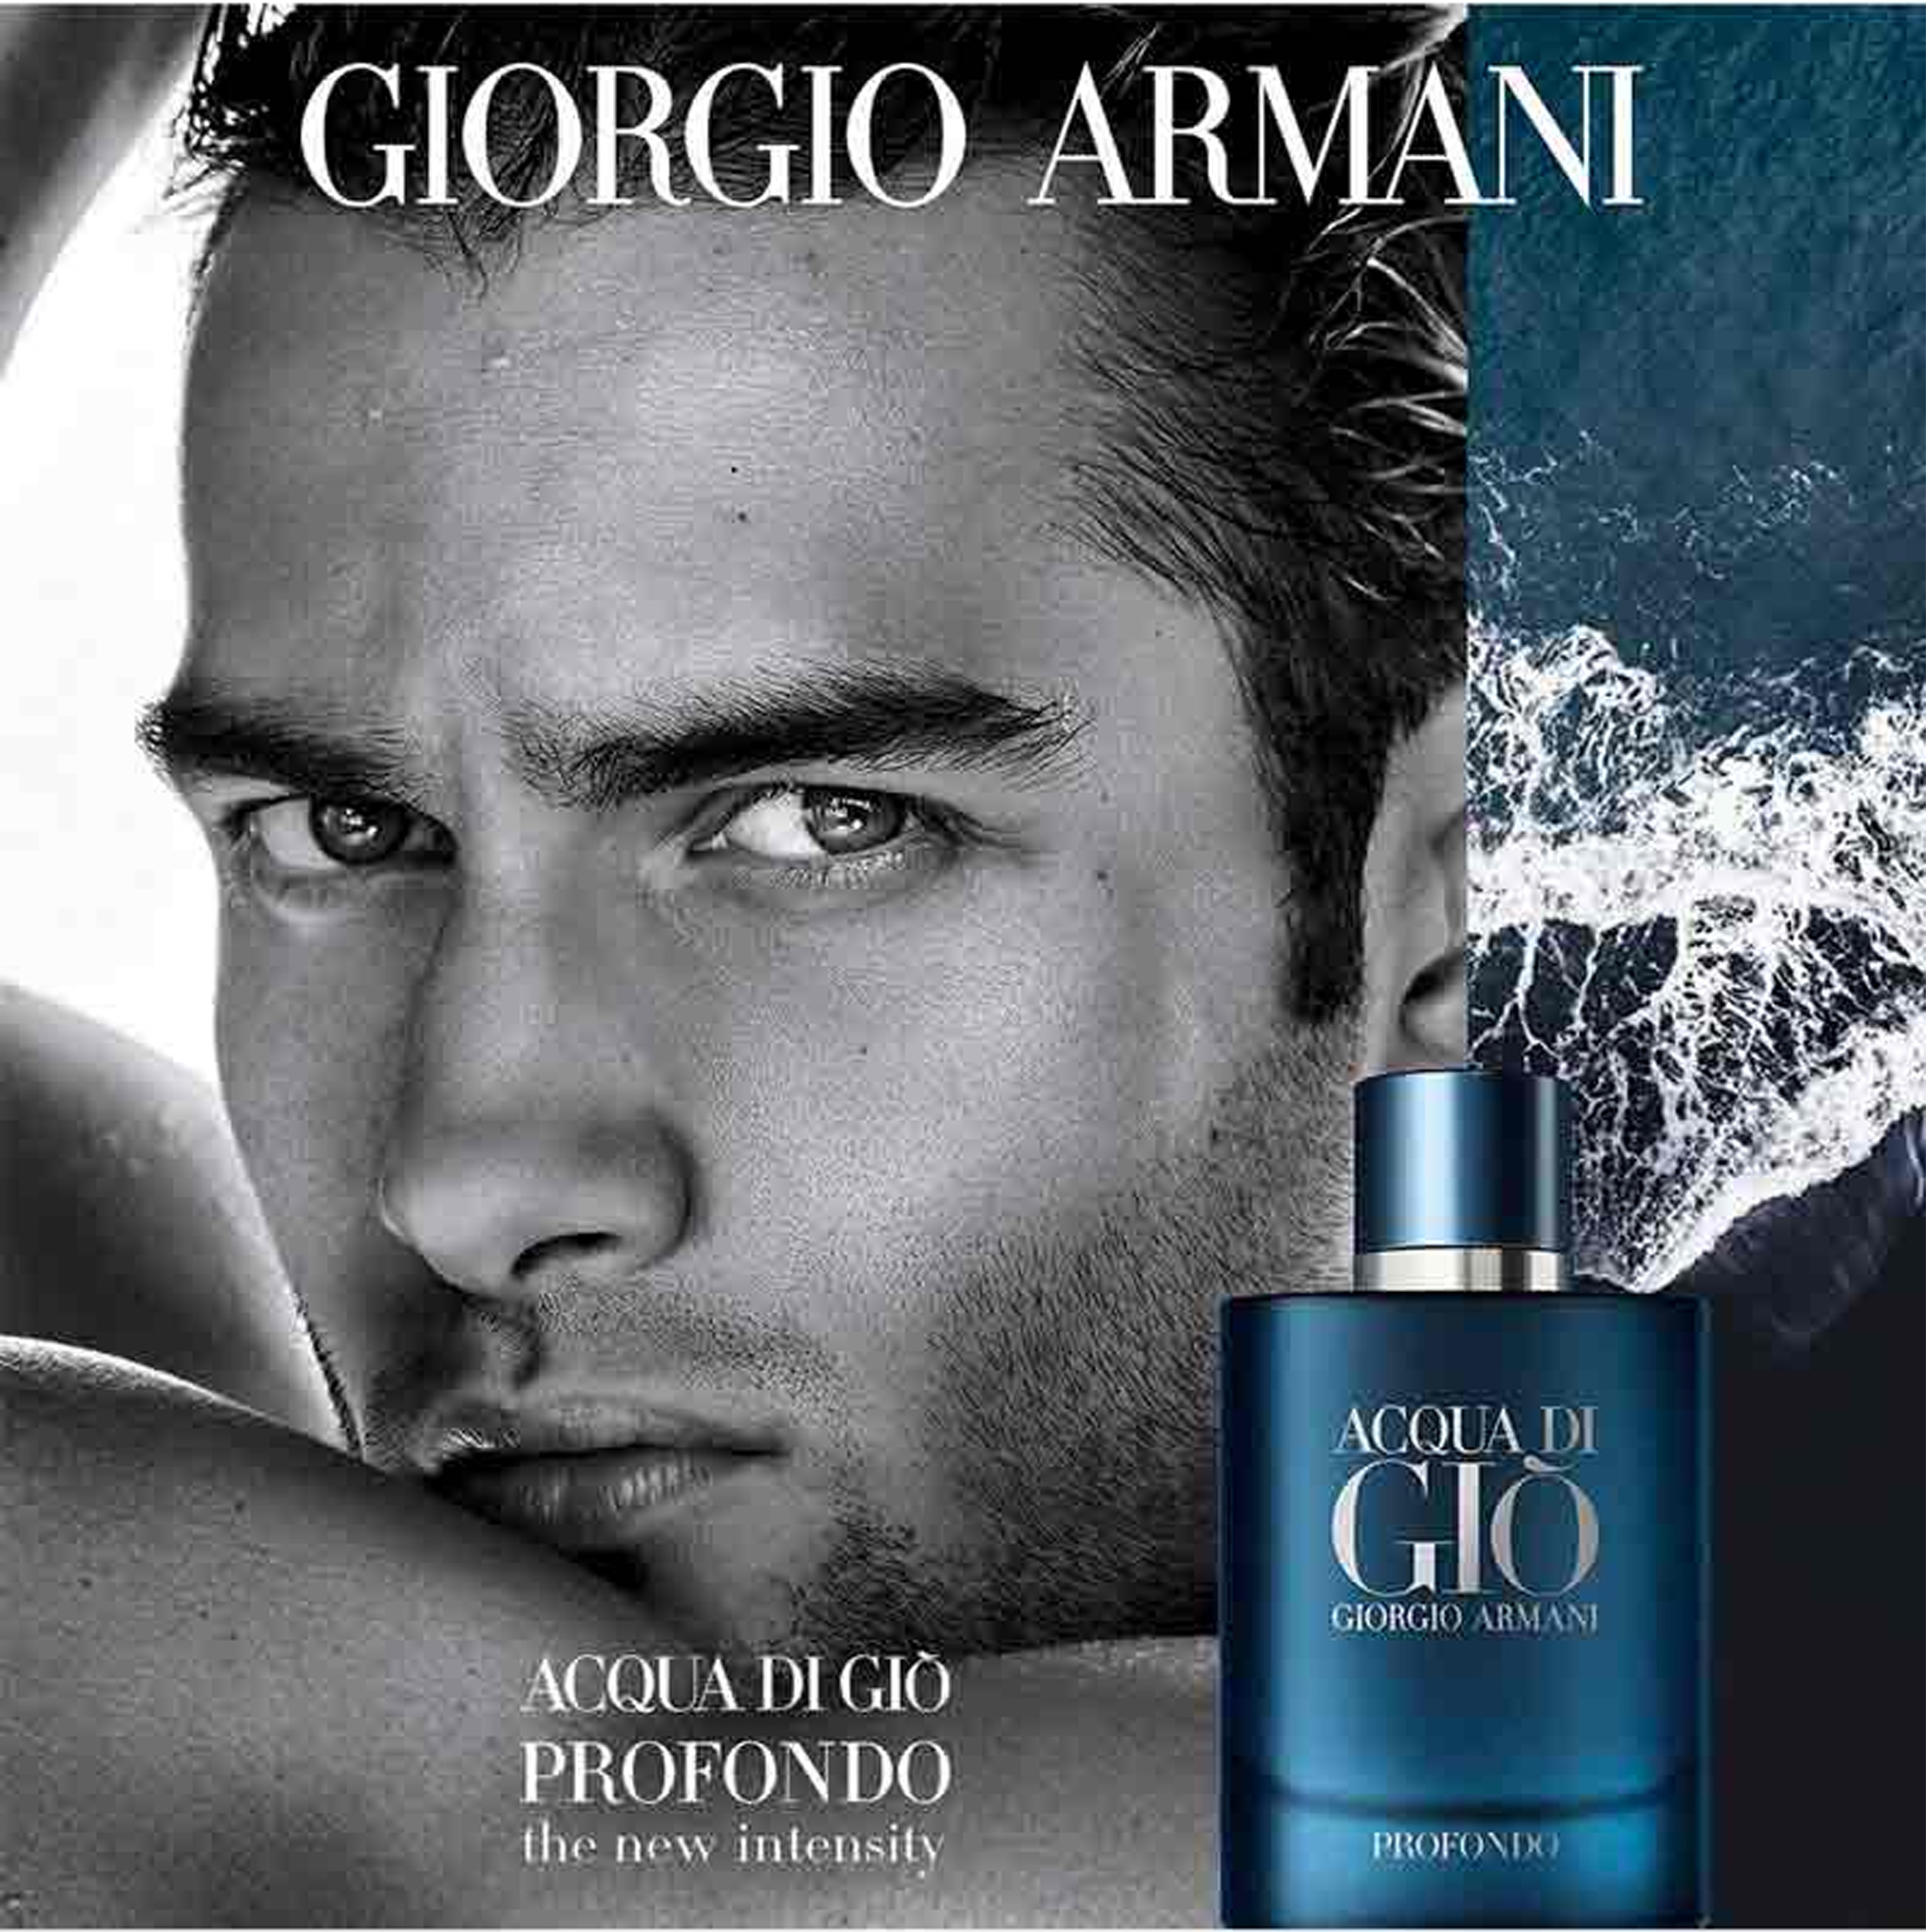 Perfume Acqua Di Giò Profondo Giorgio Armani     (Replica Con Fragancia Importada)- Hombre